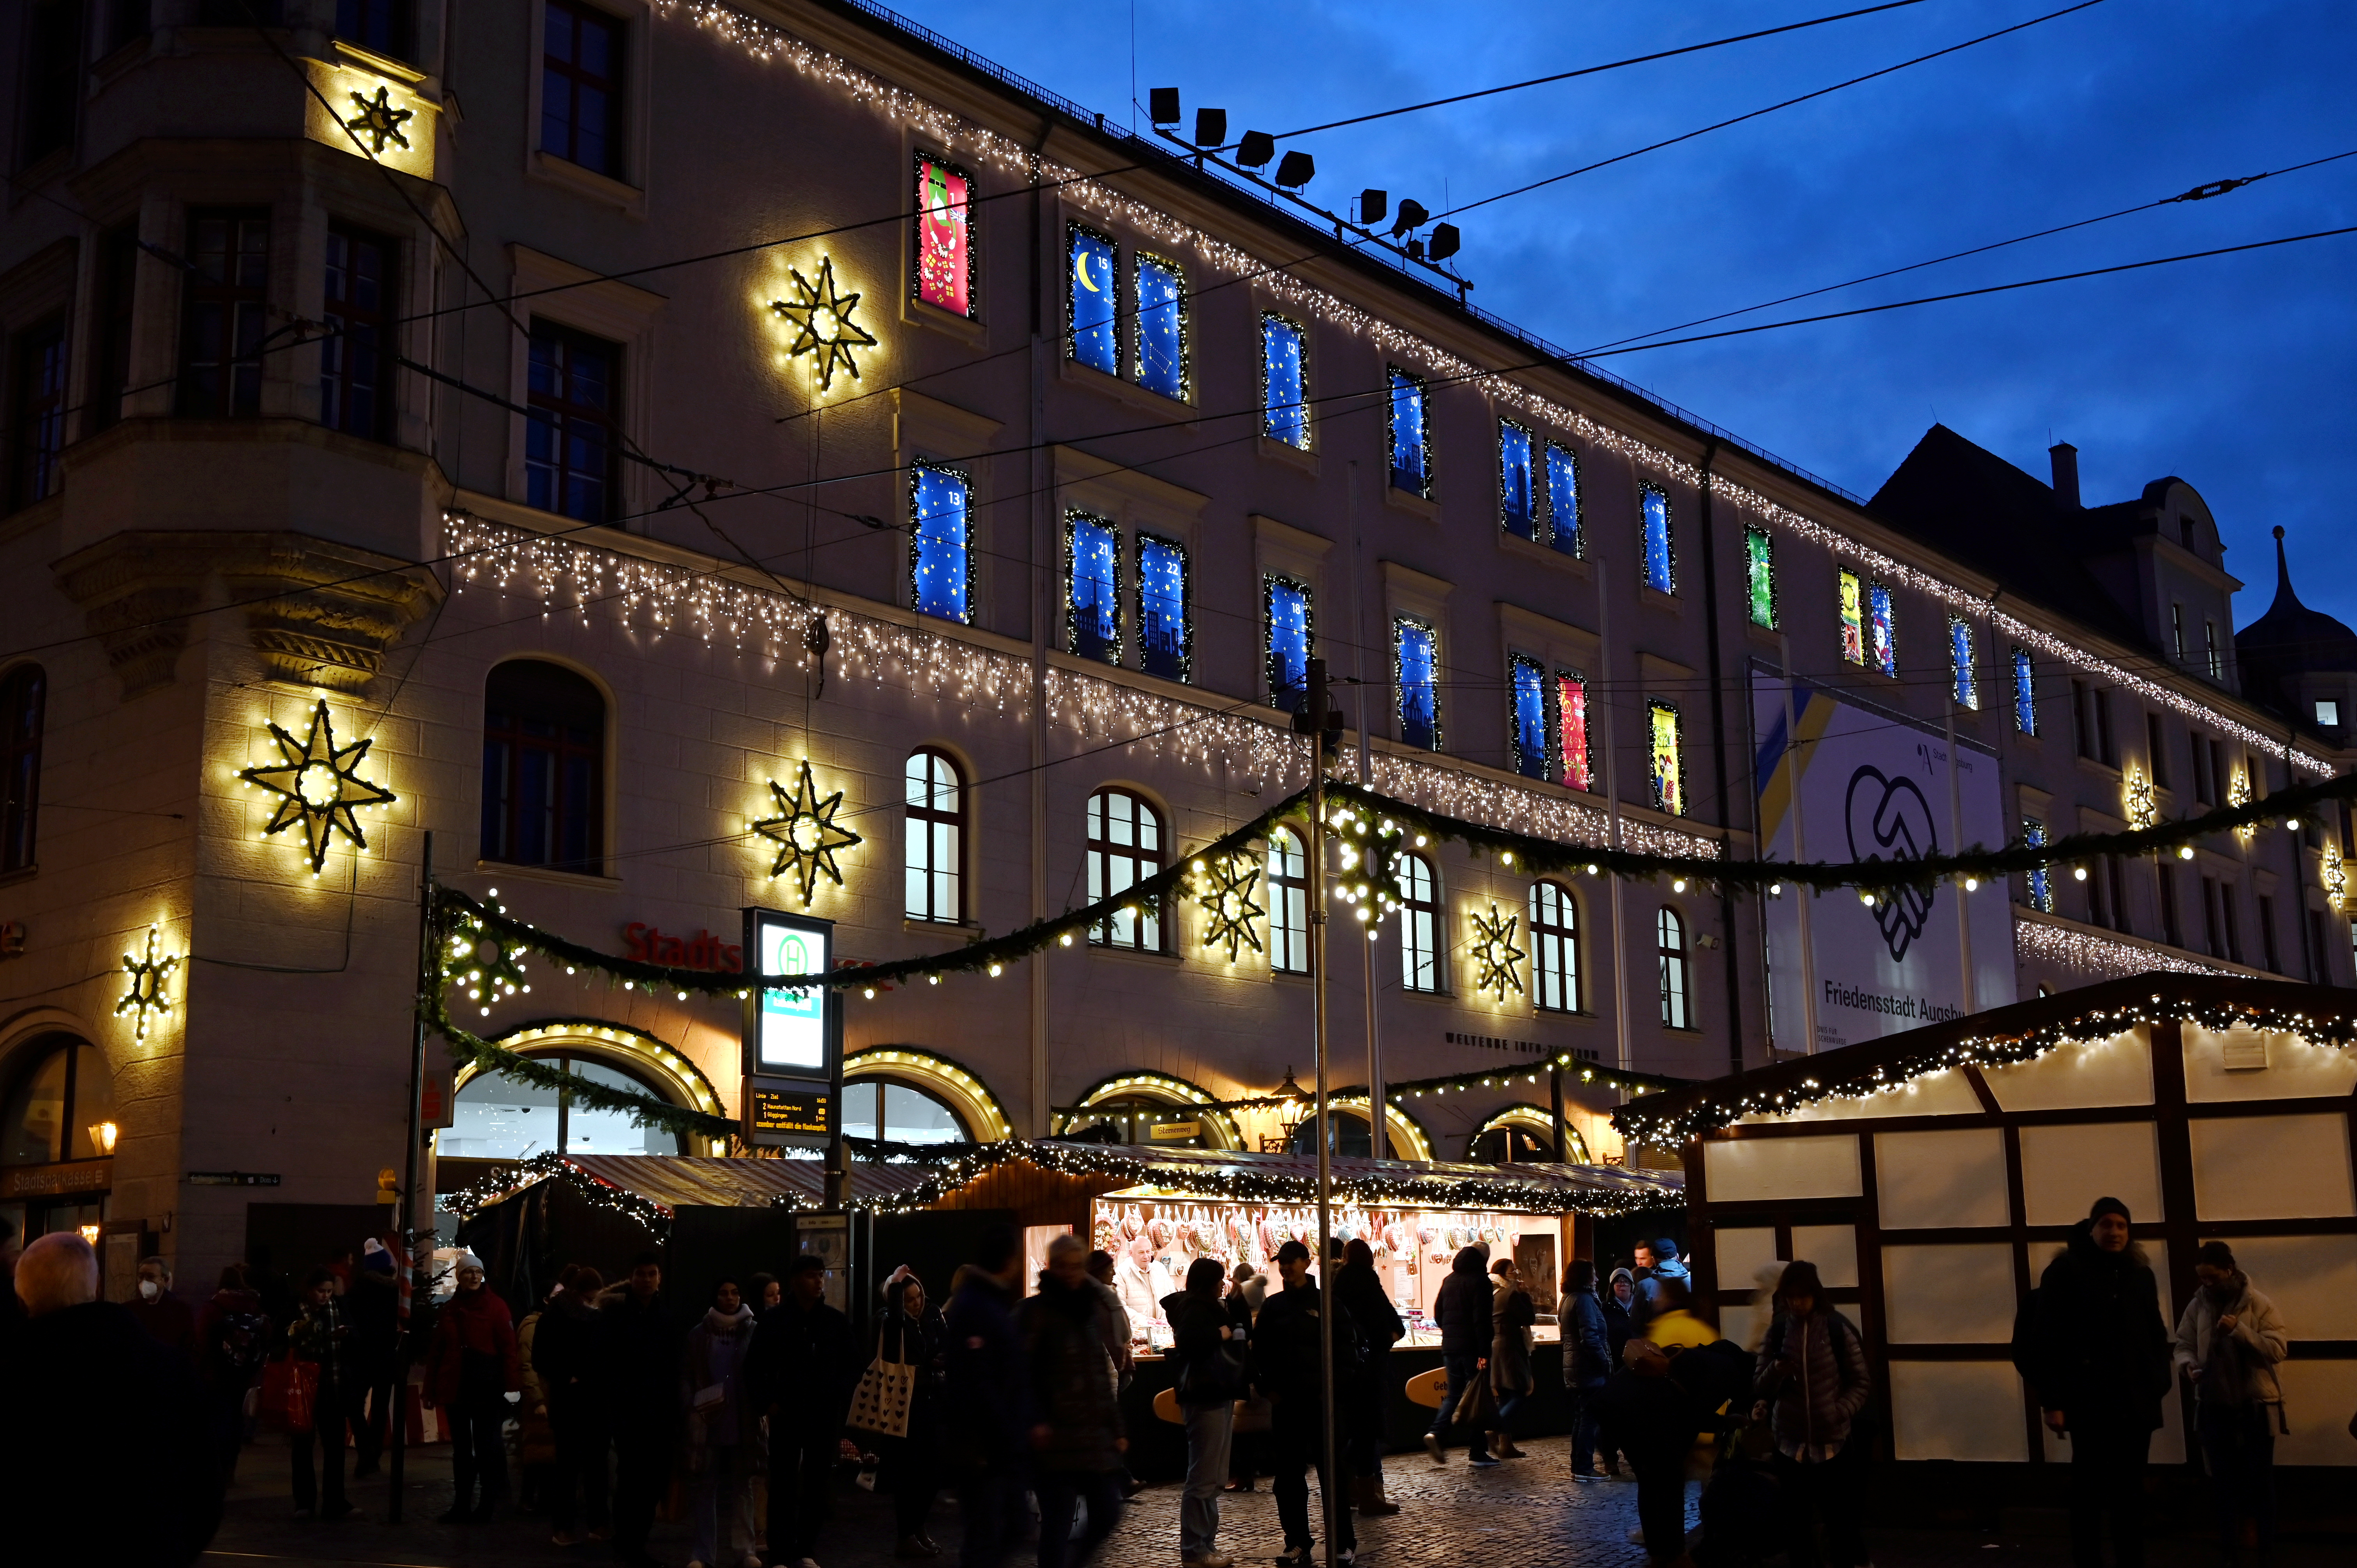 Das Verwaltungsgebäude am Rathausplatz, festlich beleuchtet mit Weihnachtssternen. Im Vordergrund ist der Christkindlesmarkt zu sehen.